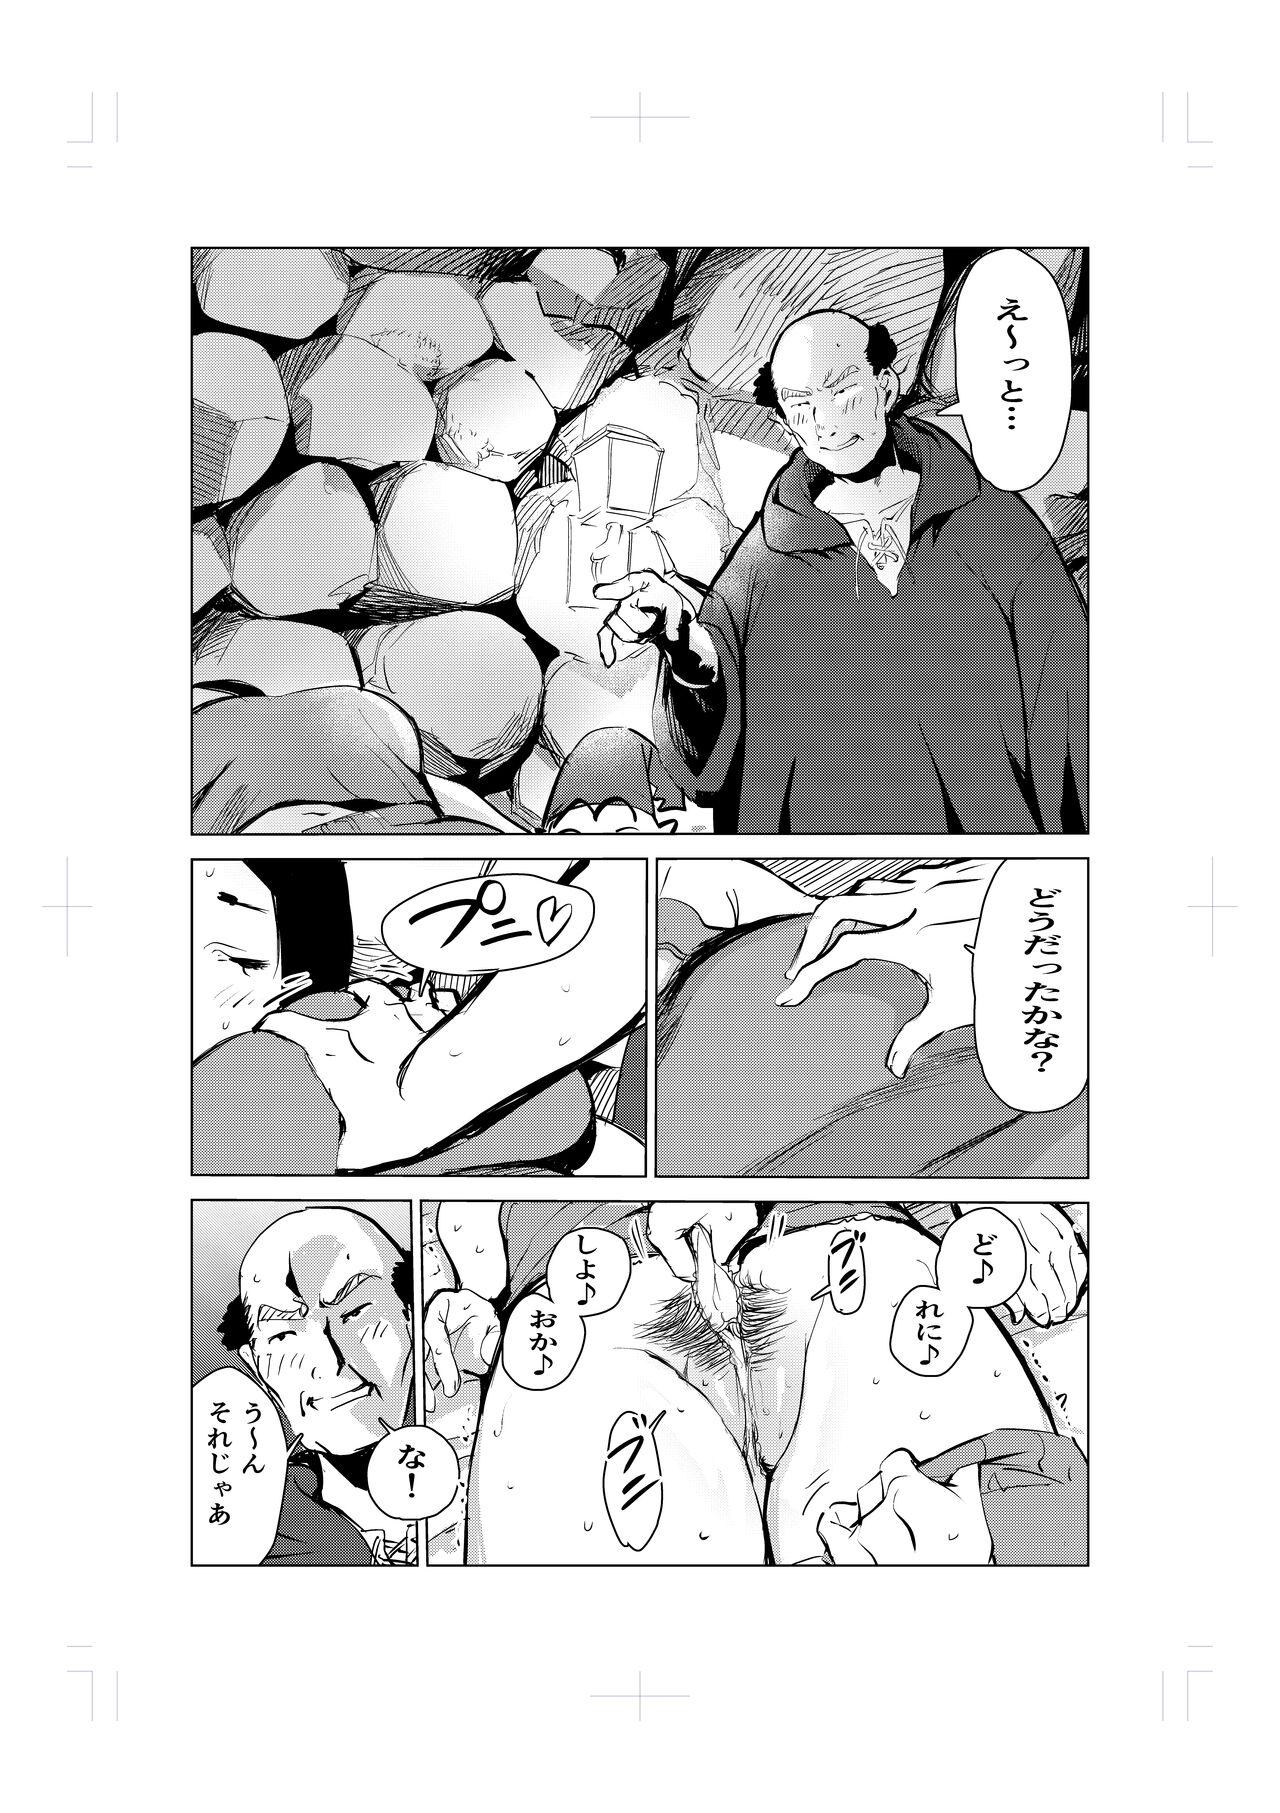 Strapon Nemuri hime no ketsu ana ne bakku monogatari - Original Pierced - Page 7